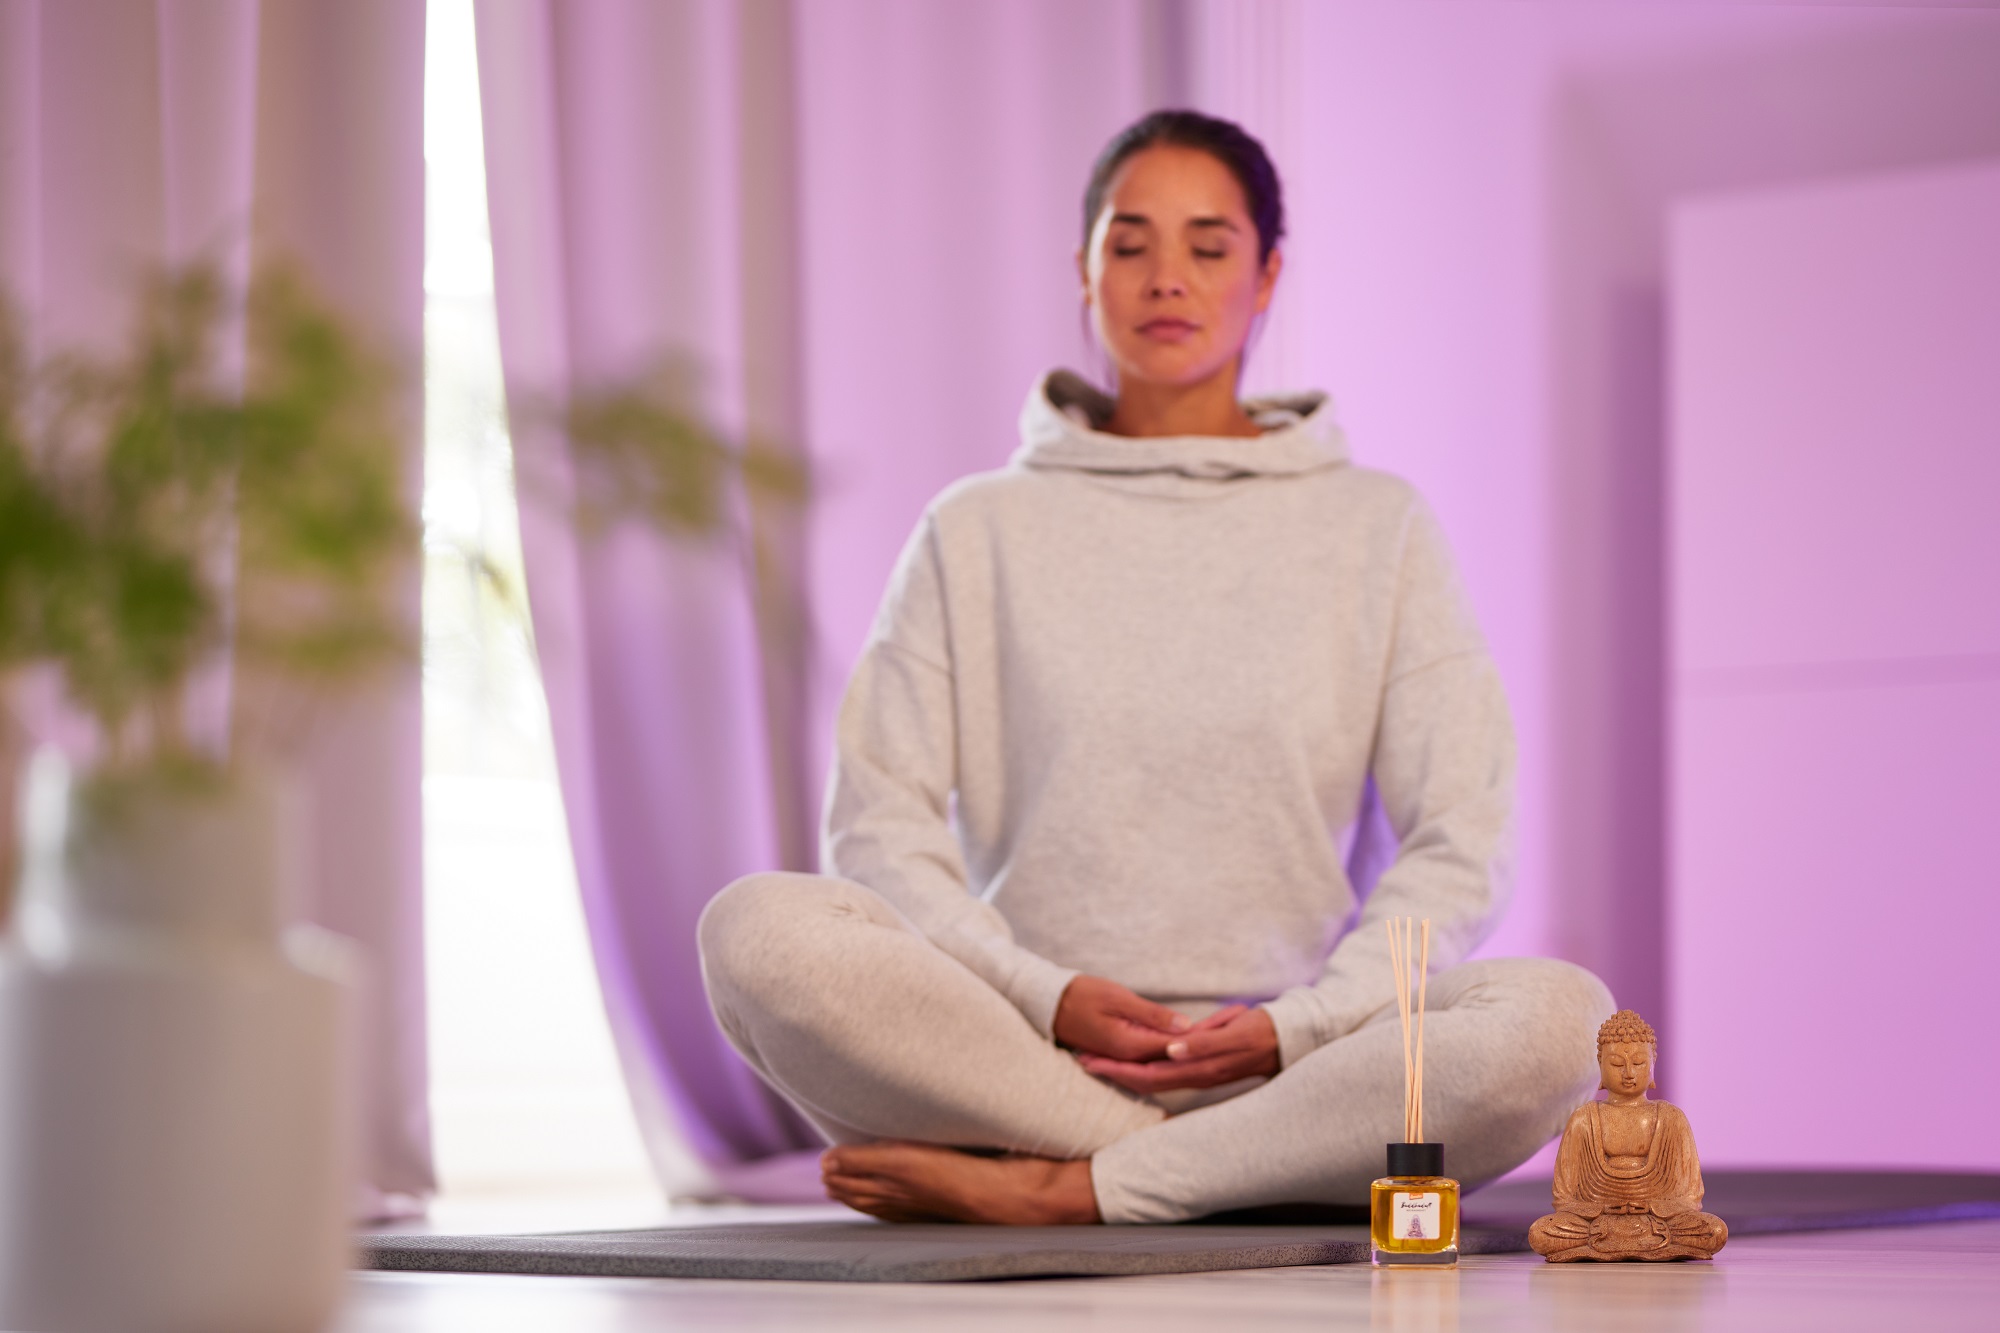 Ätherische Öle zur Unterstützung bei Meditation, Achtsamkeit und Entspannung